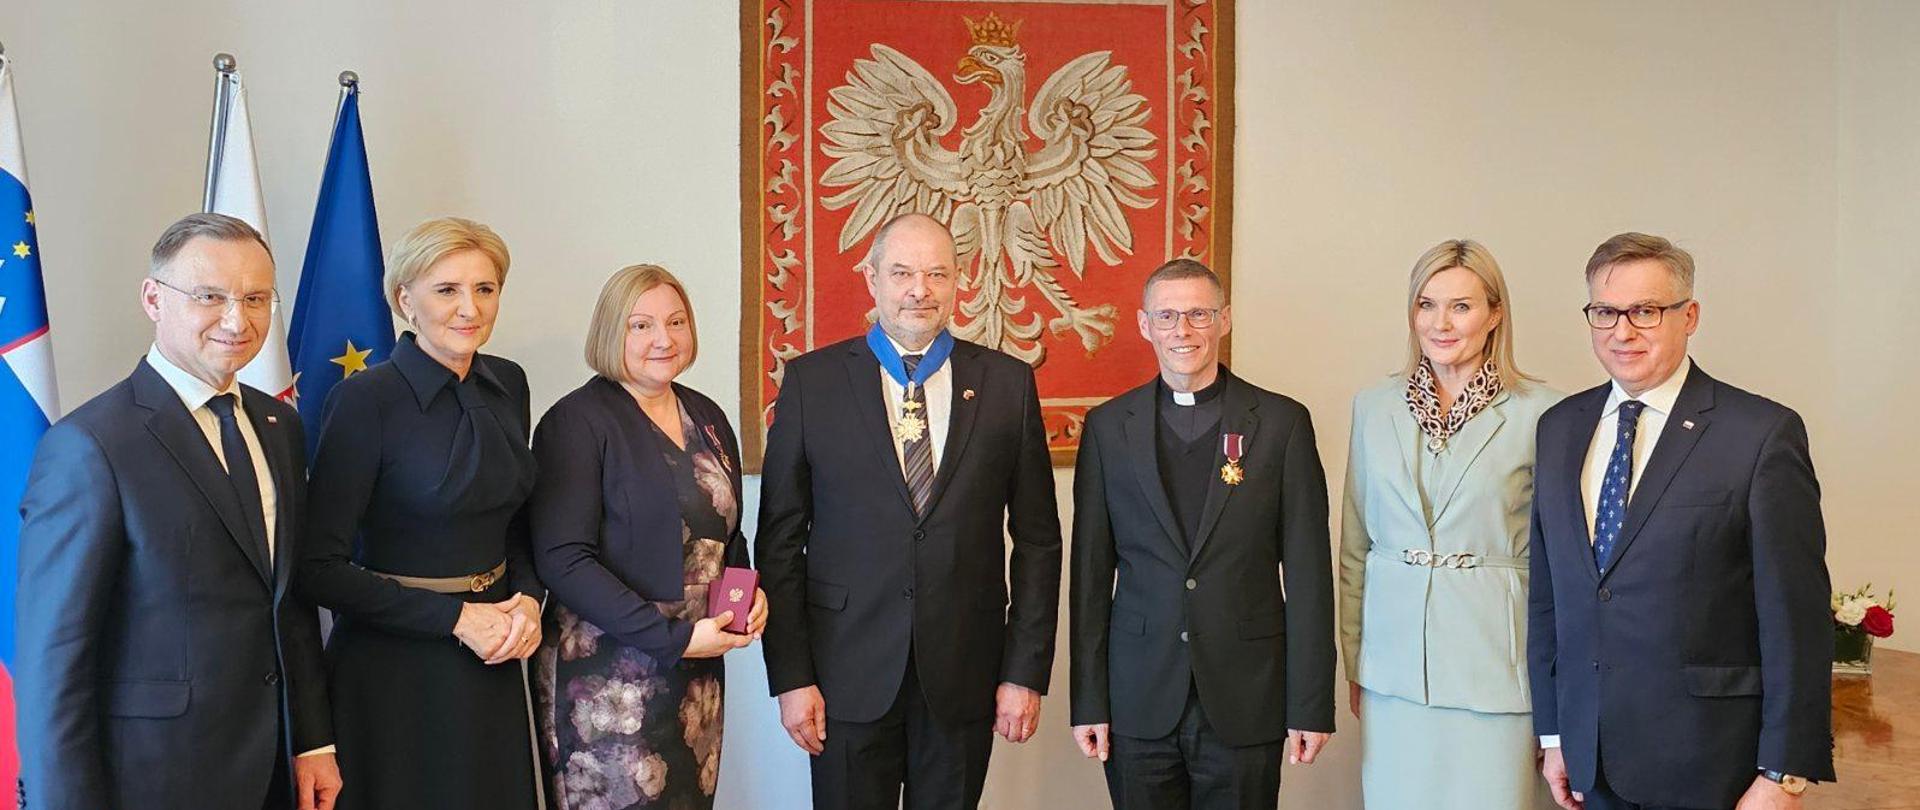 Prezydenta RP Andrzej Duda wręczył osobom zasłużonym dla budowania relacji polsko-słoweńskich wysokie odznaczenia państwowe.